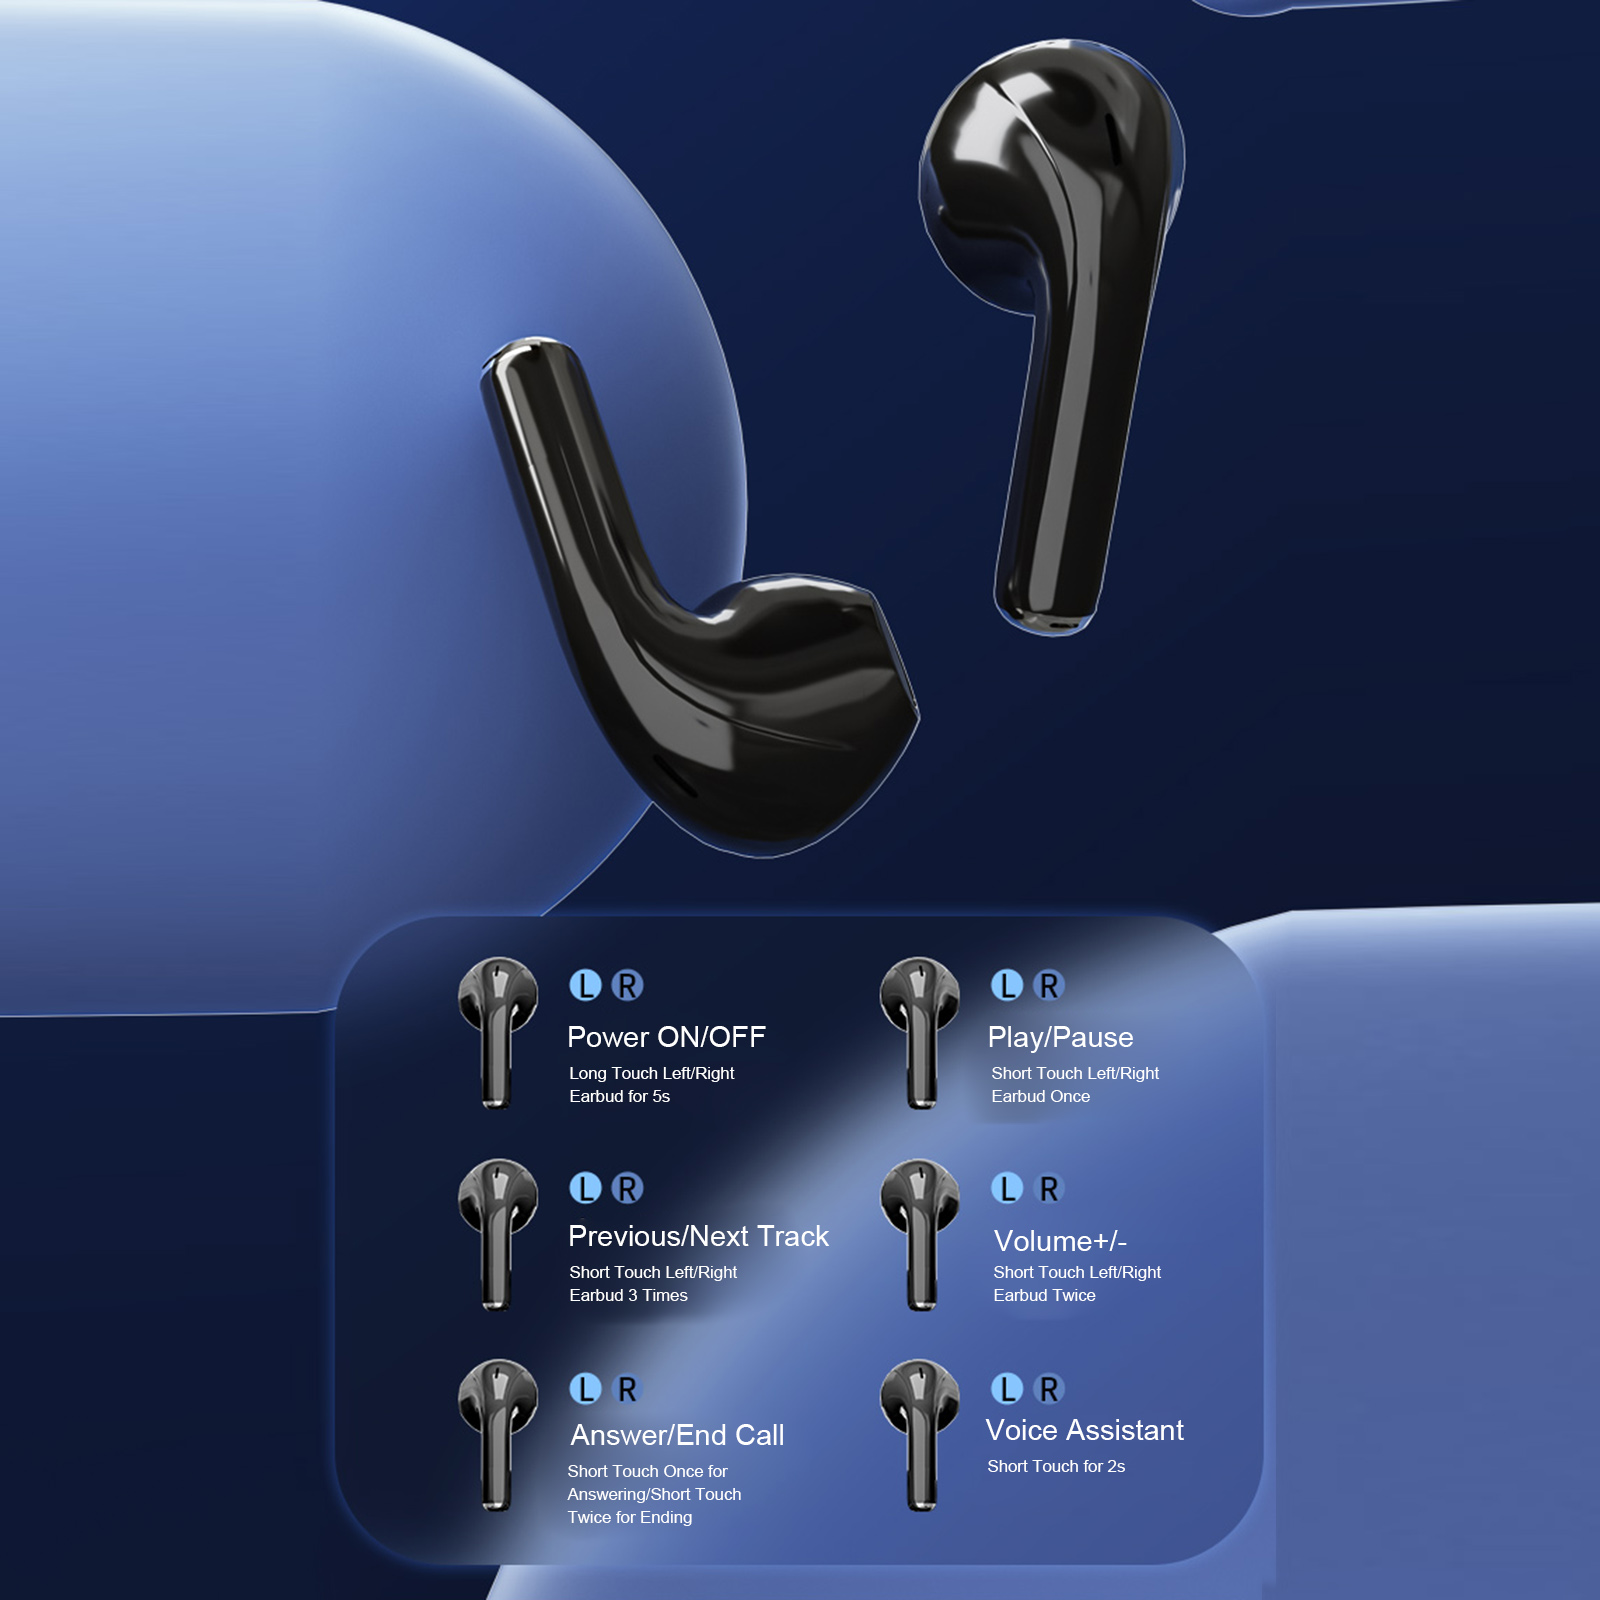 Lenovo-XT83-Pro-True-Wireless-Headphones-BT5-1-Sport-Headset-In-ear-Music-Earphone-Mini-Earbuds (3)